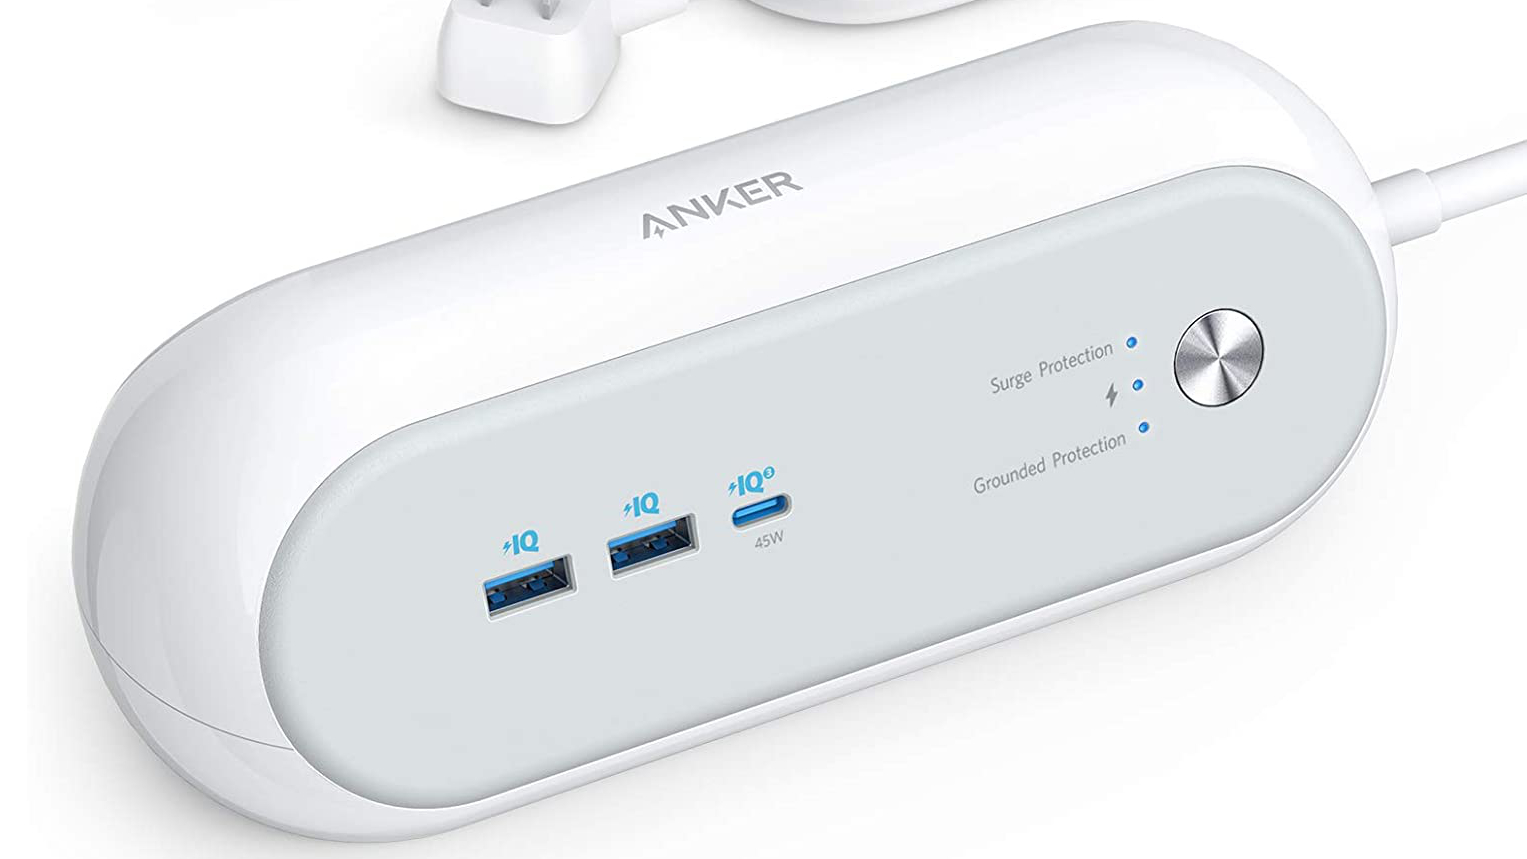 ANKER 623电源条-USB墙充电器